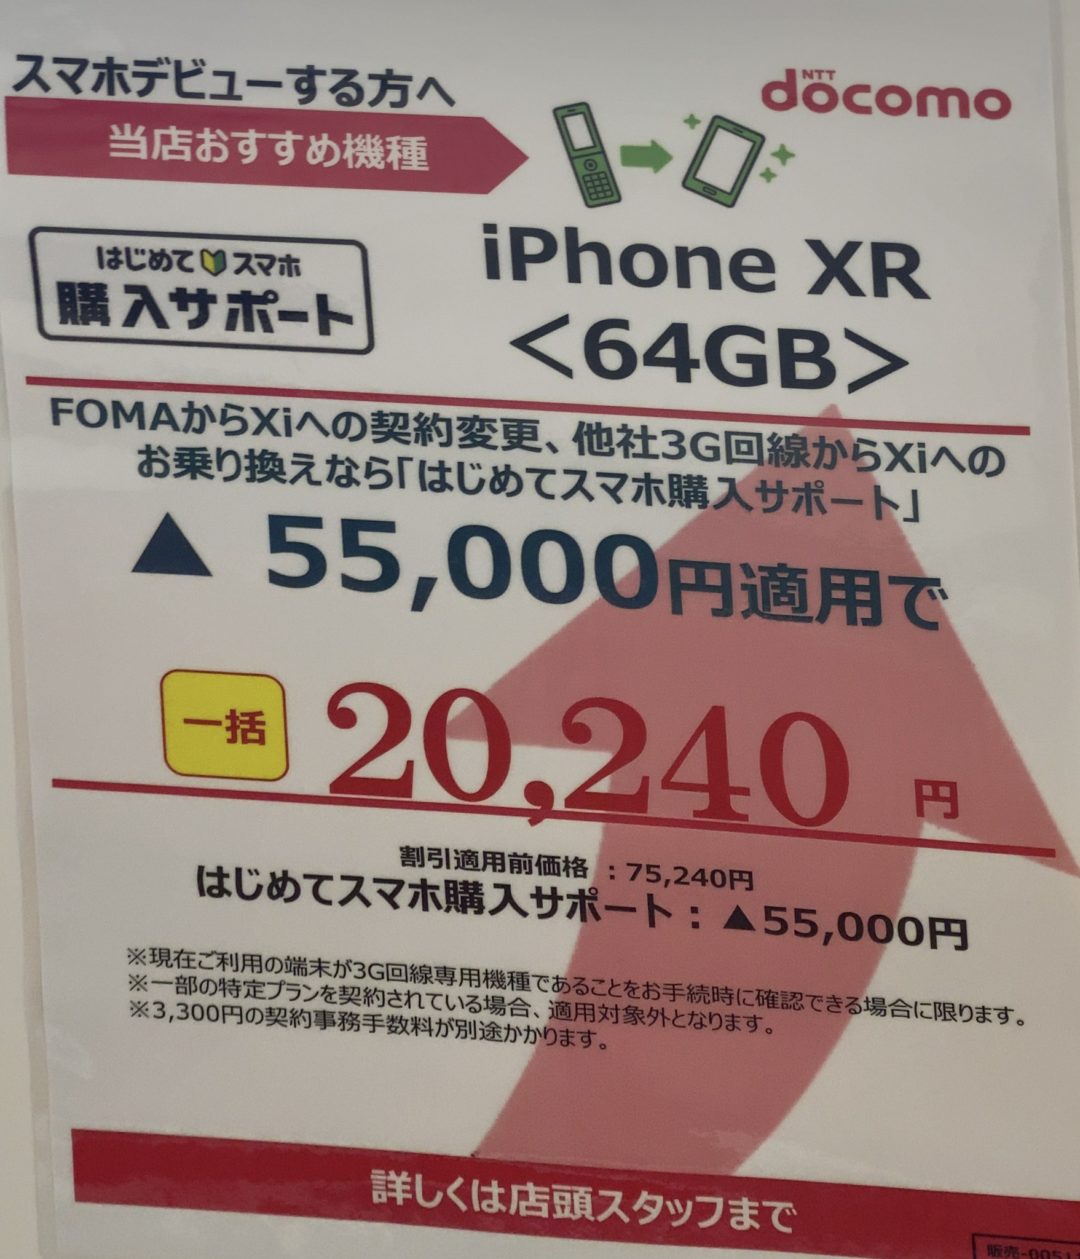 ドコモショップでfomaからの機種変更と3gからのmnpでiphone Xrの64gbが一括 240円 Pixel 3aは一括0円